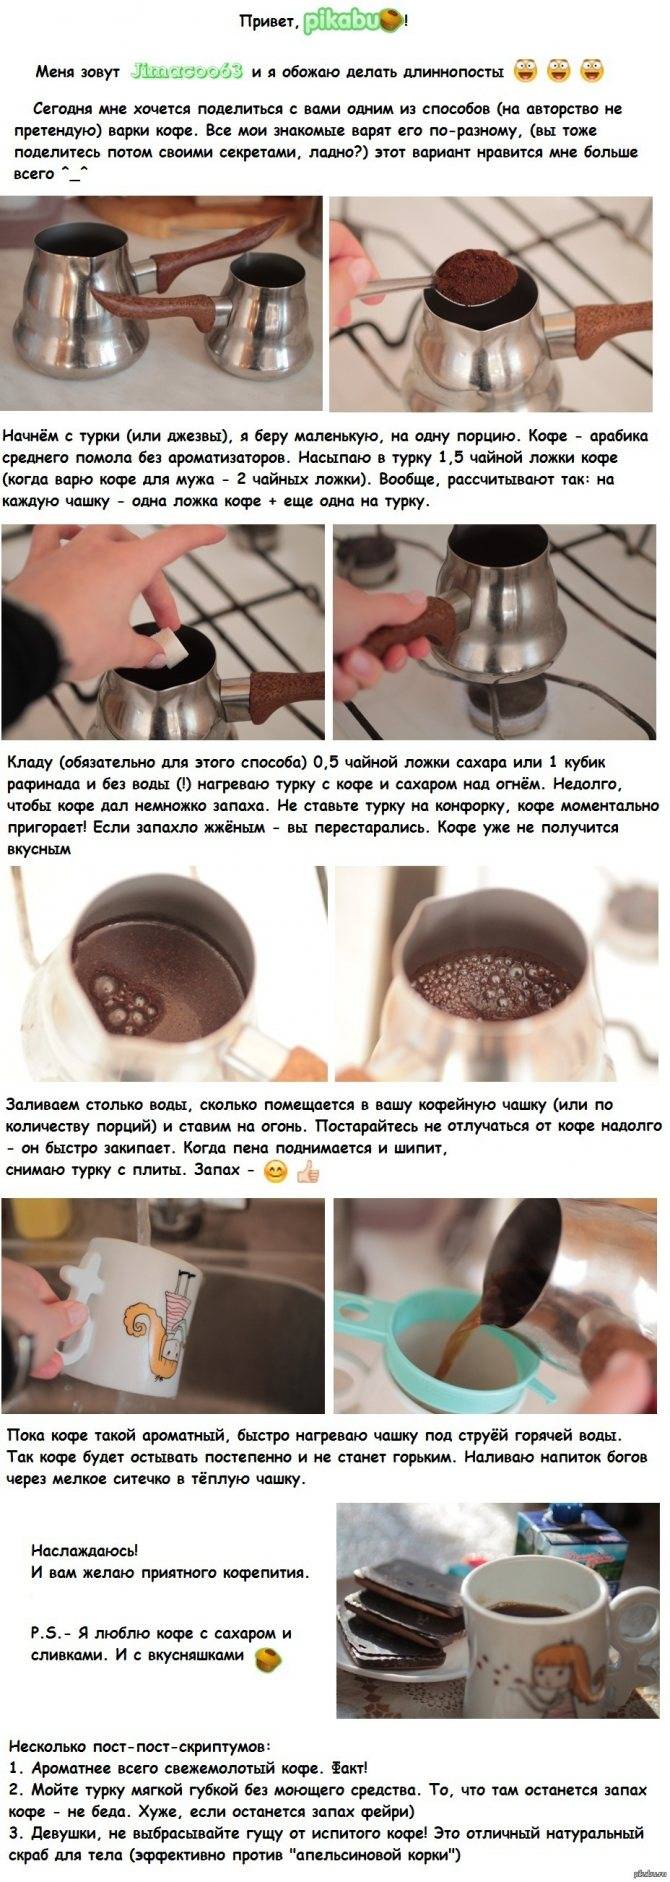 Как варить кофе в турке? - портал обучения и саморазвития